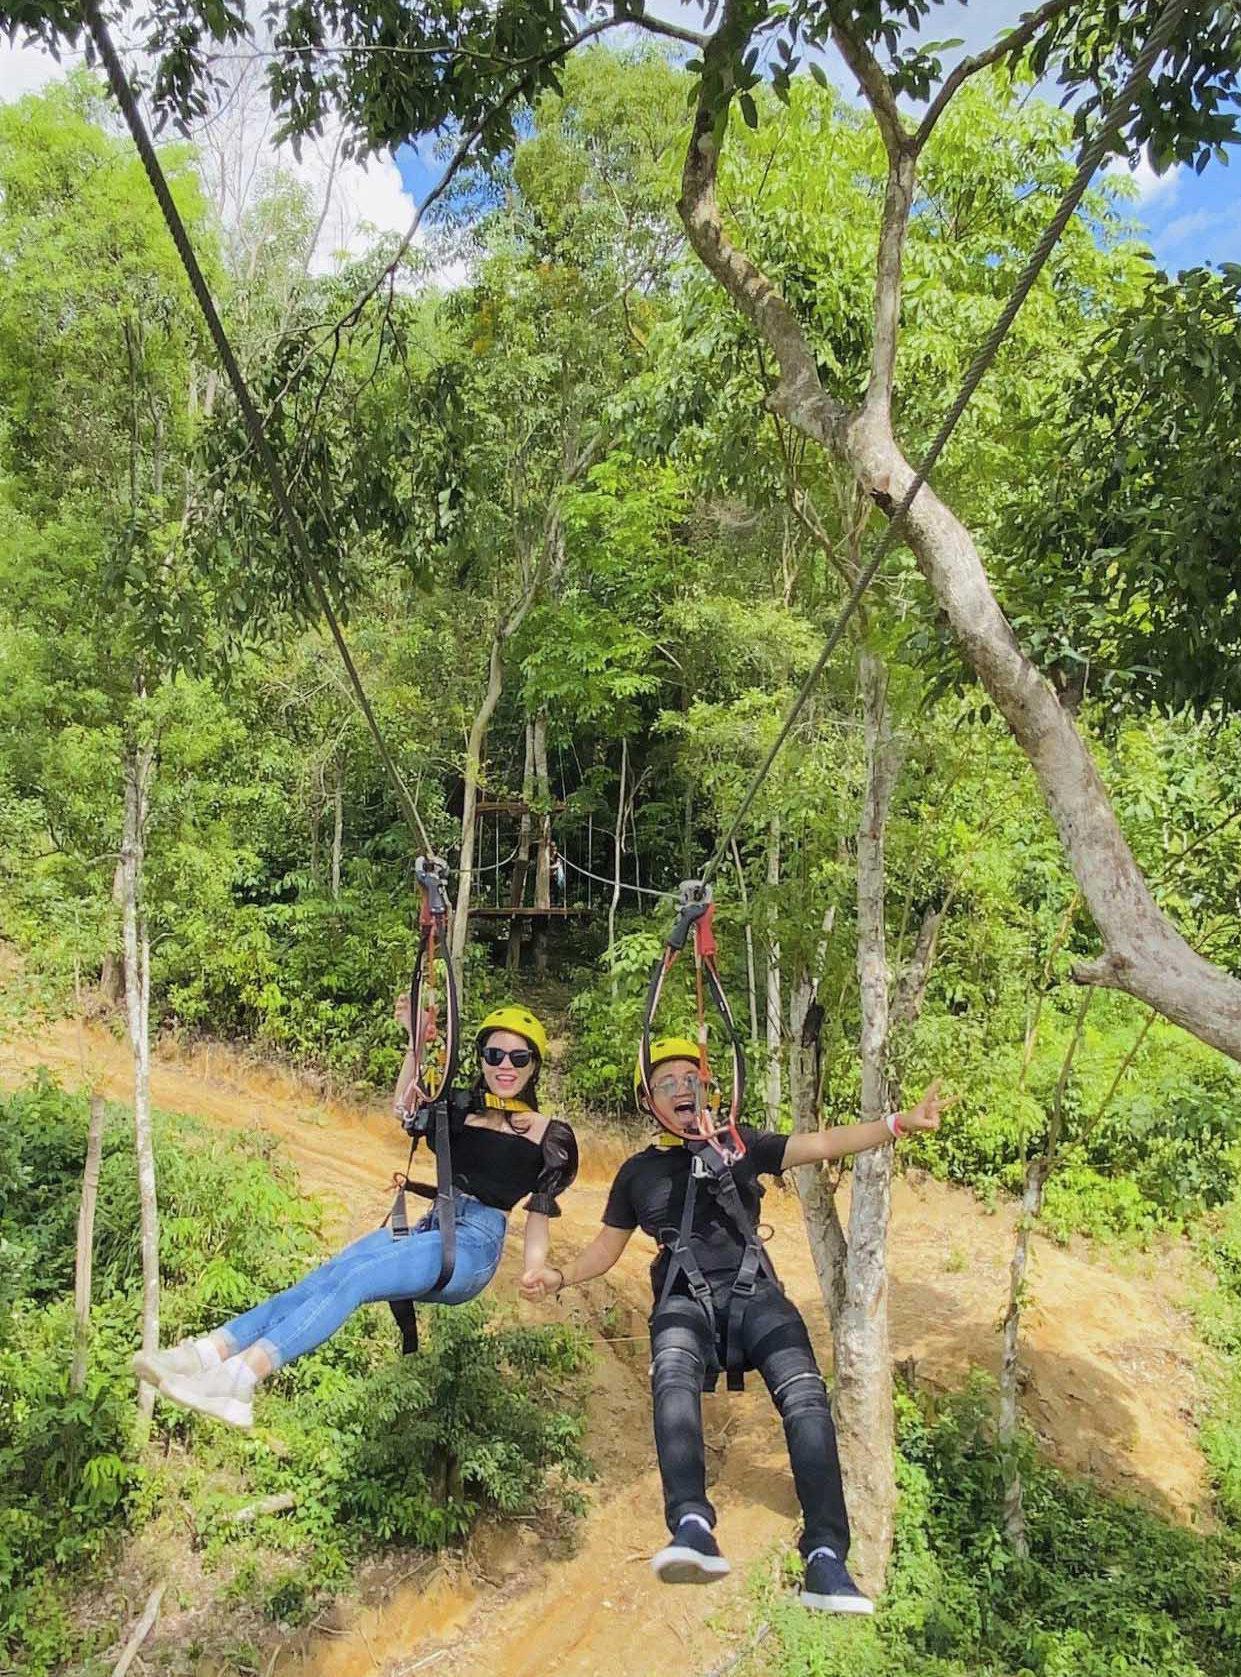 Trượt zipline xuyên rừng - một sản phẩm du lịch xanh của Công viên du lịch thám hiểm Kong Forest
